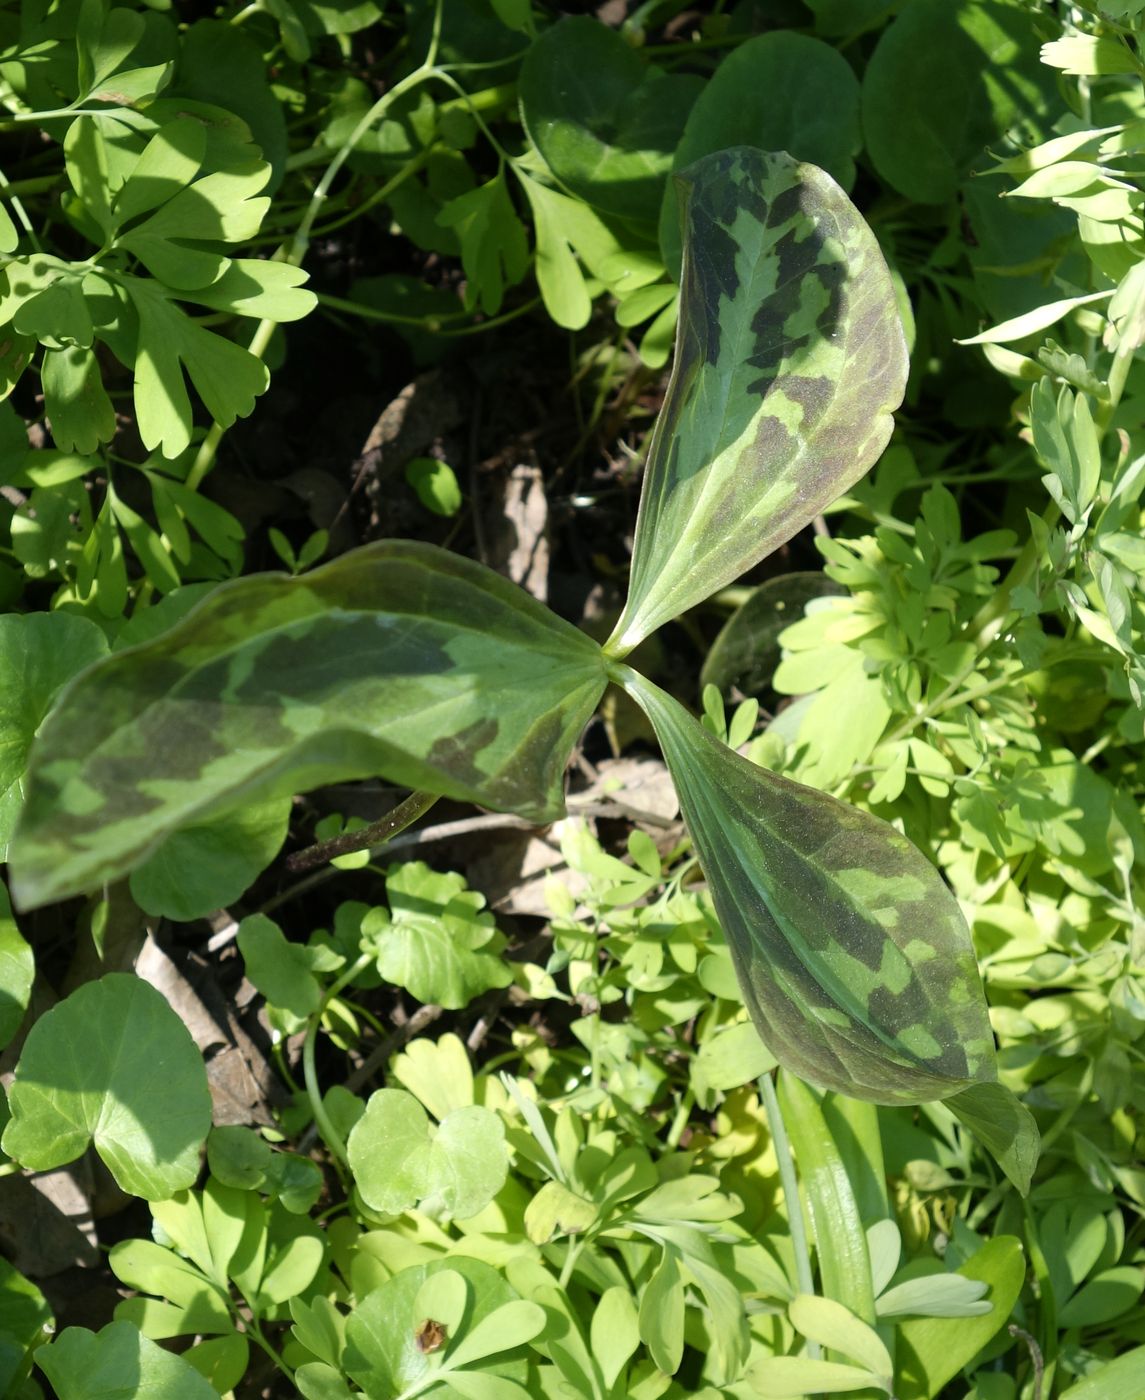 Image of Trillium recurvatum specimen.